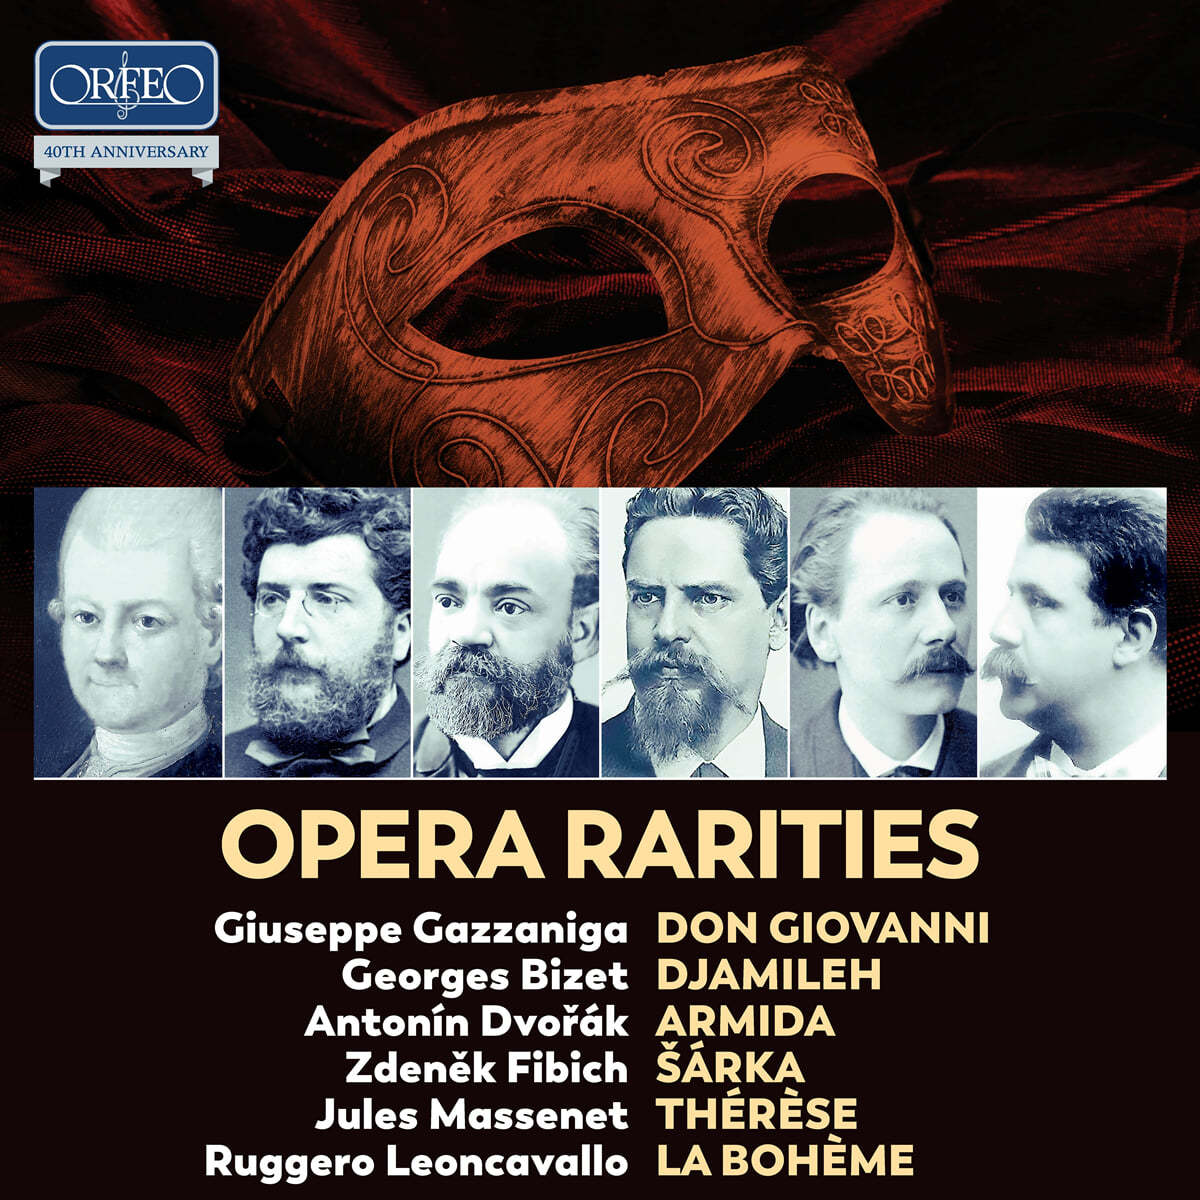 오르페오 레이블 40주년 기념 음반 - 희귀 오페라 선집 (ORFEO 40th Anniversary Edition - Opera Rarities)